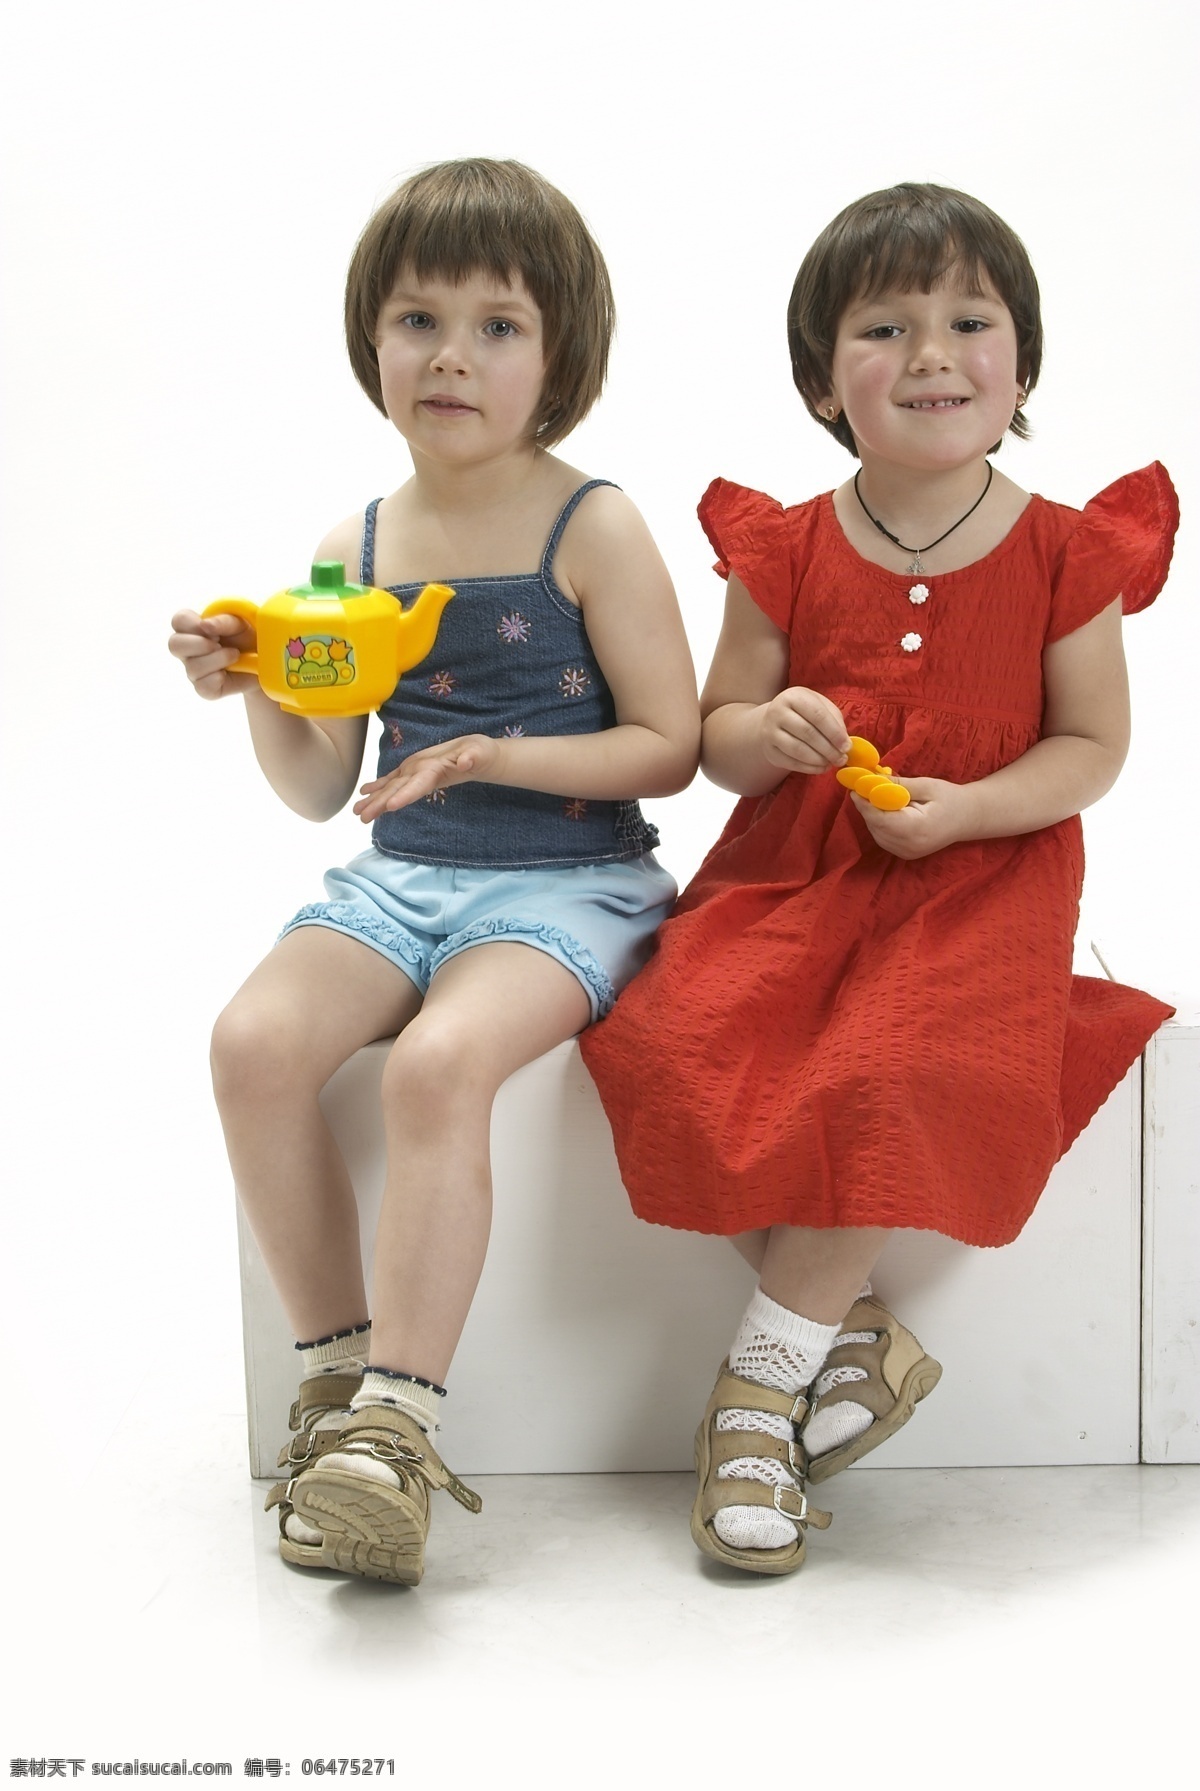 两个 玩 玩具 小女孩 快乐生活 宝宝 幼儿 宝贝 娃娃 孩子 可爱 小学生主题 儿童幼儿 人物图库